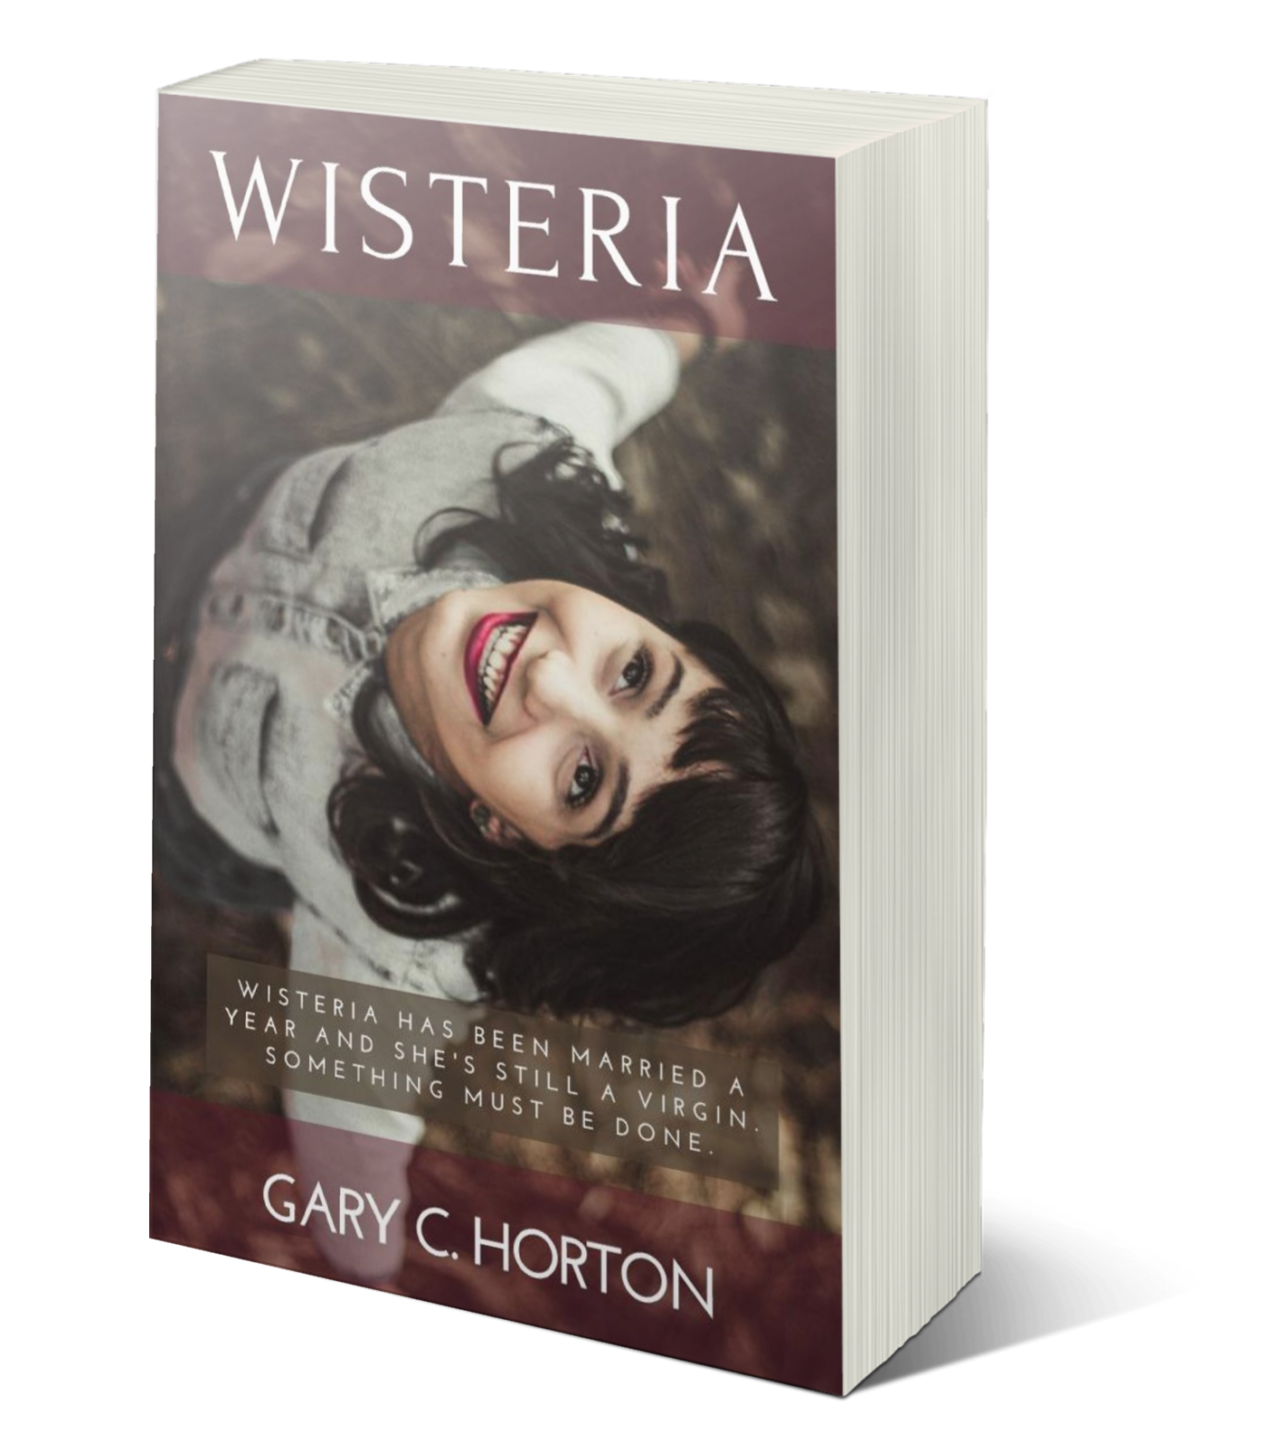  Wisteria a novel by Gary C. Horton